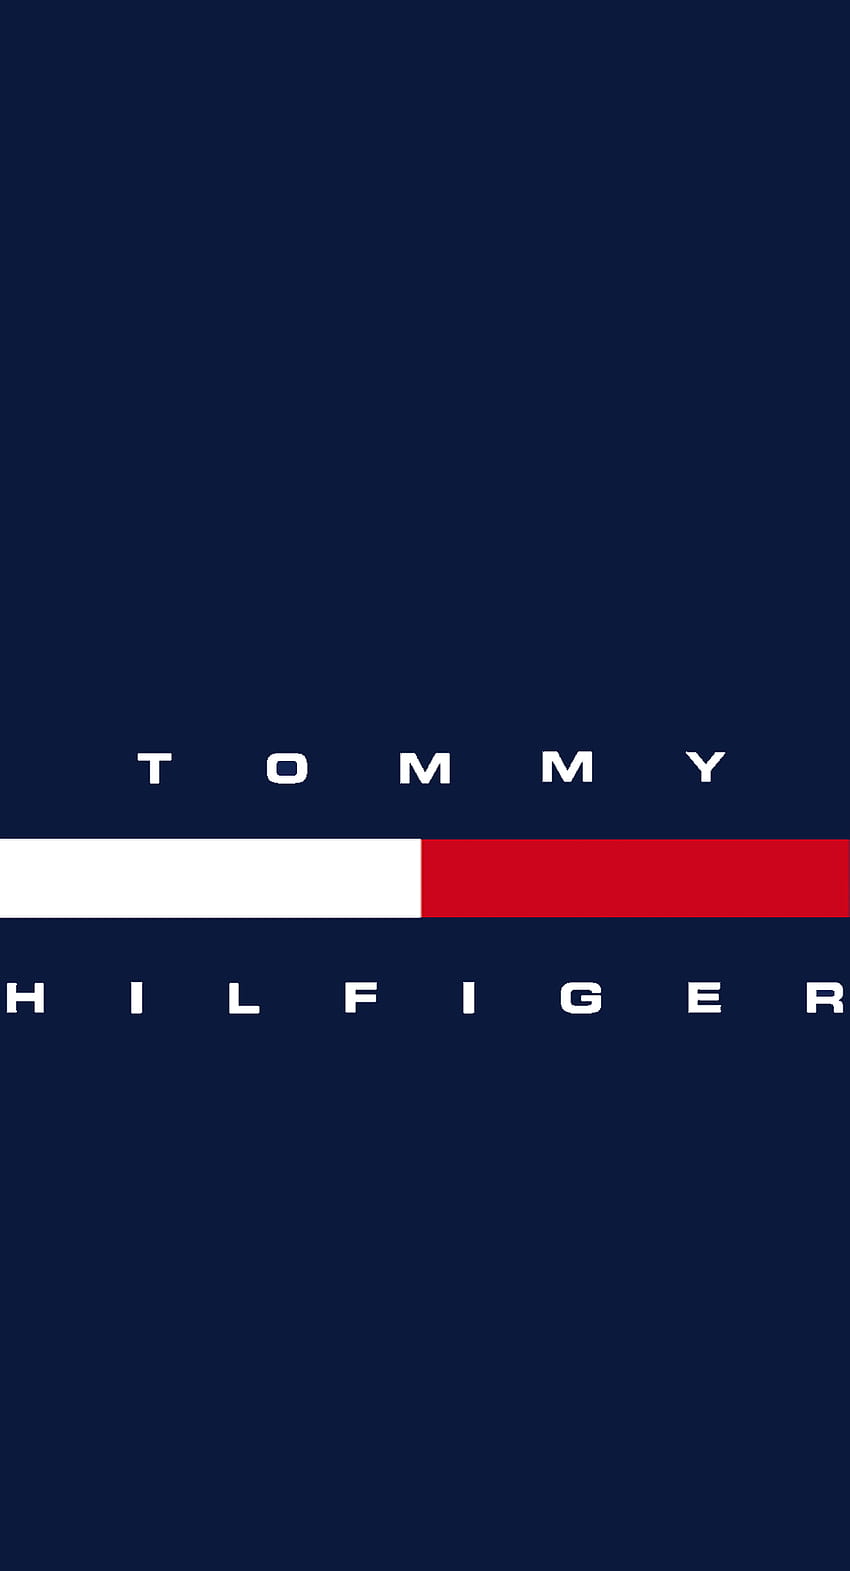 Teléfono Tommy Hilfiger. Tommy hilfiger, Teléfono , Logotipo de Tommy Hilfiger fondo de pantalla del teléfono